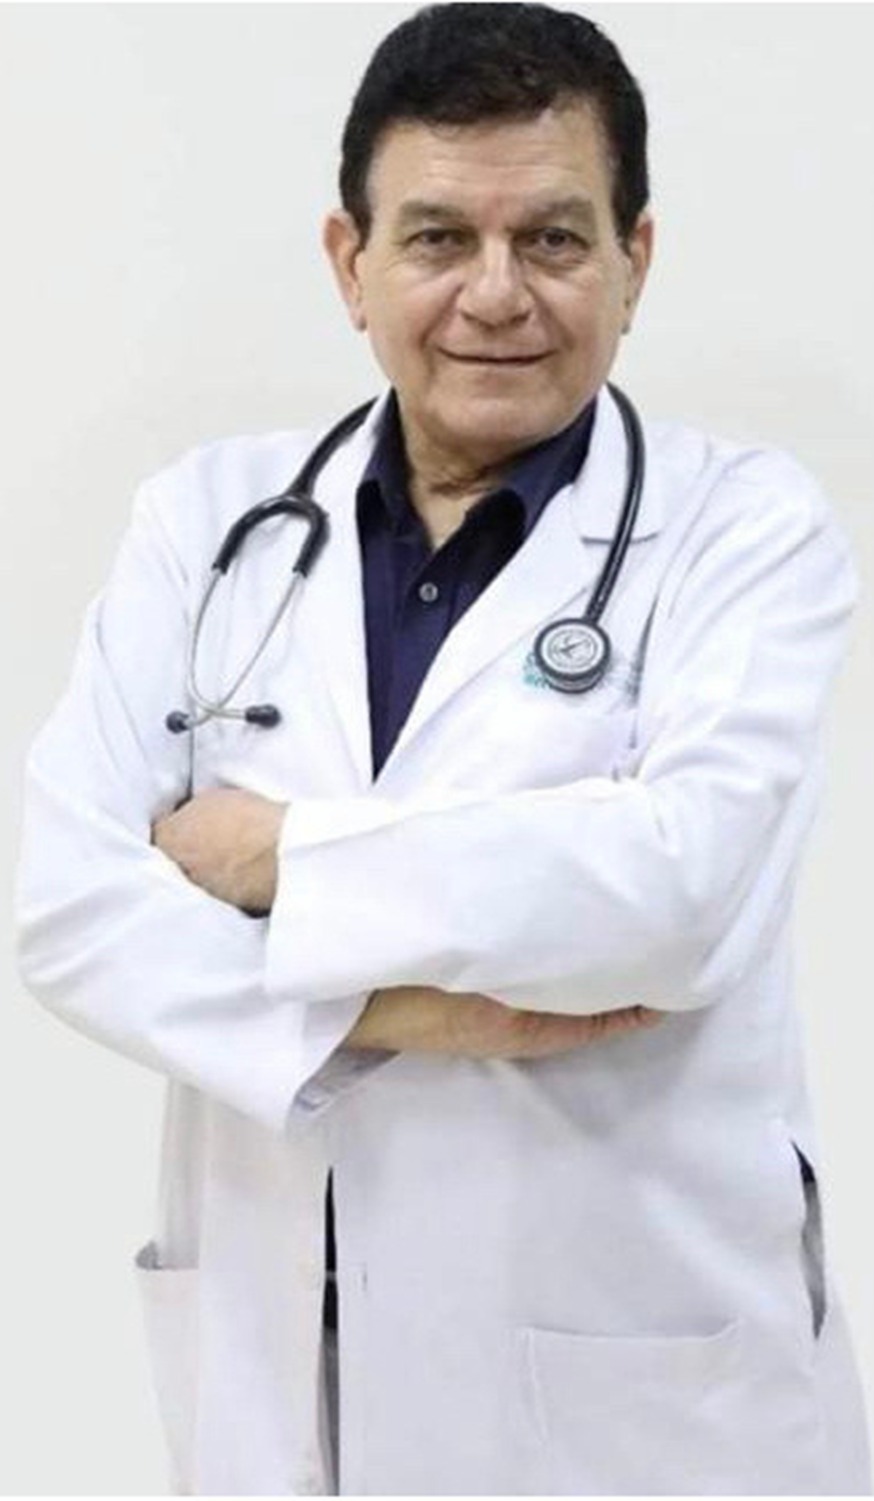 Dr. Effat Radwan